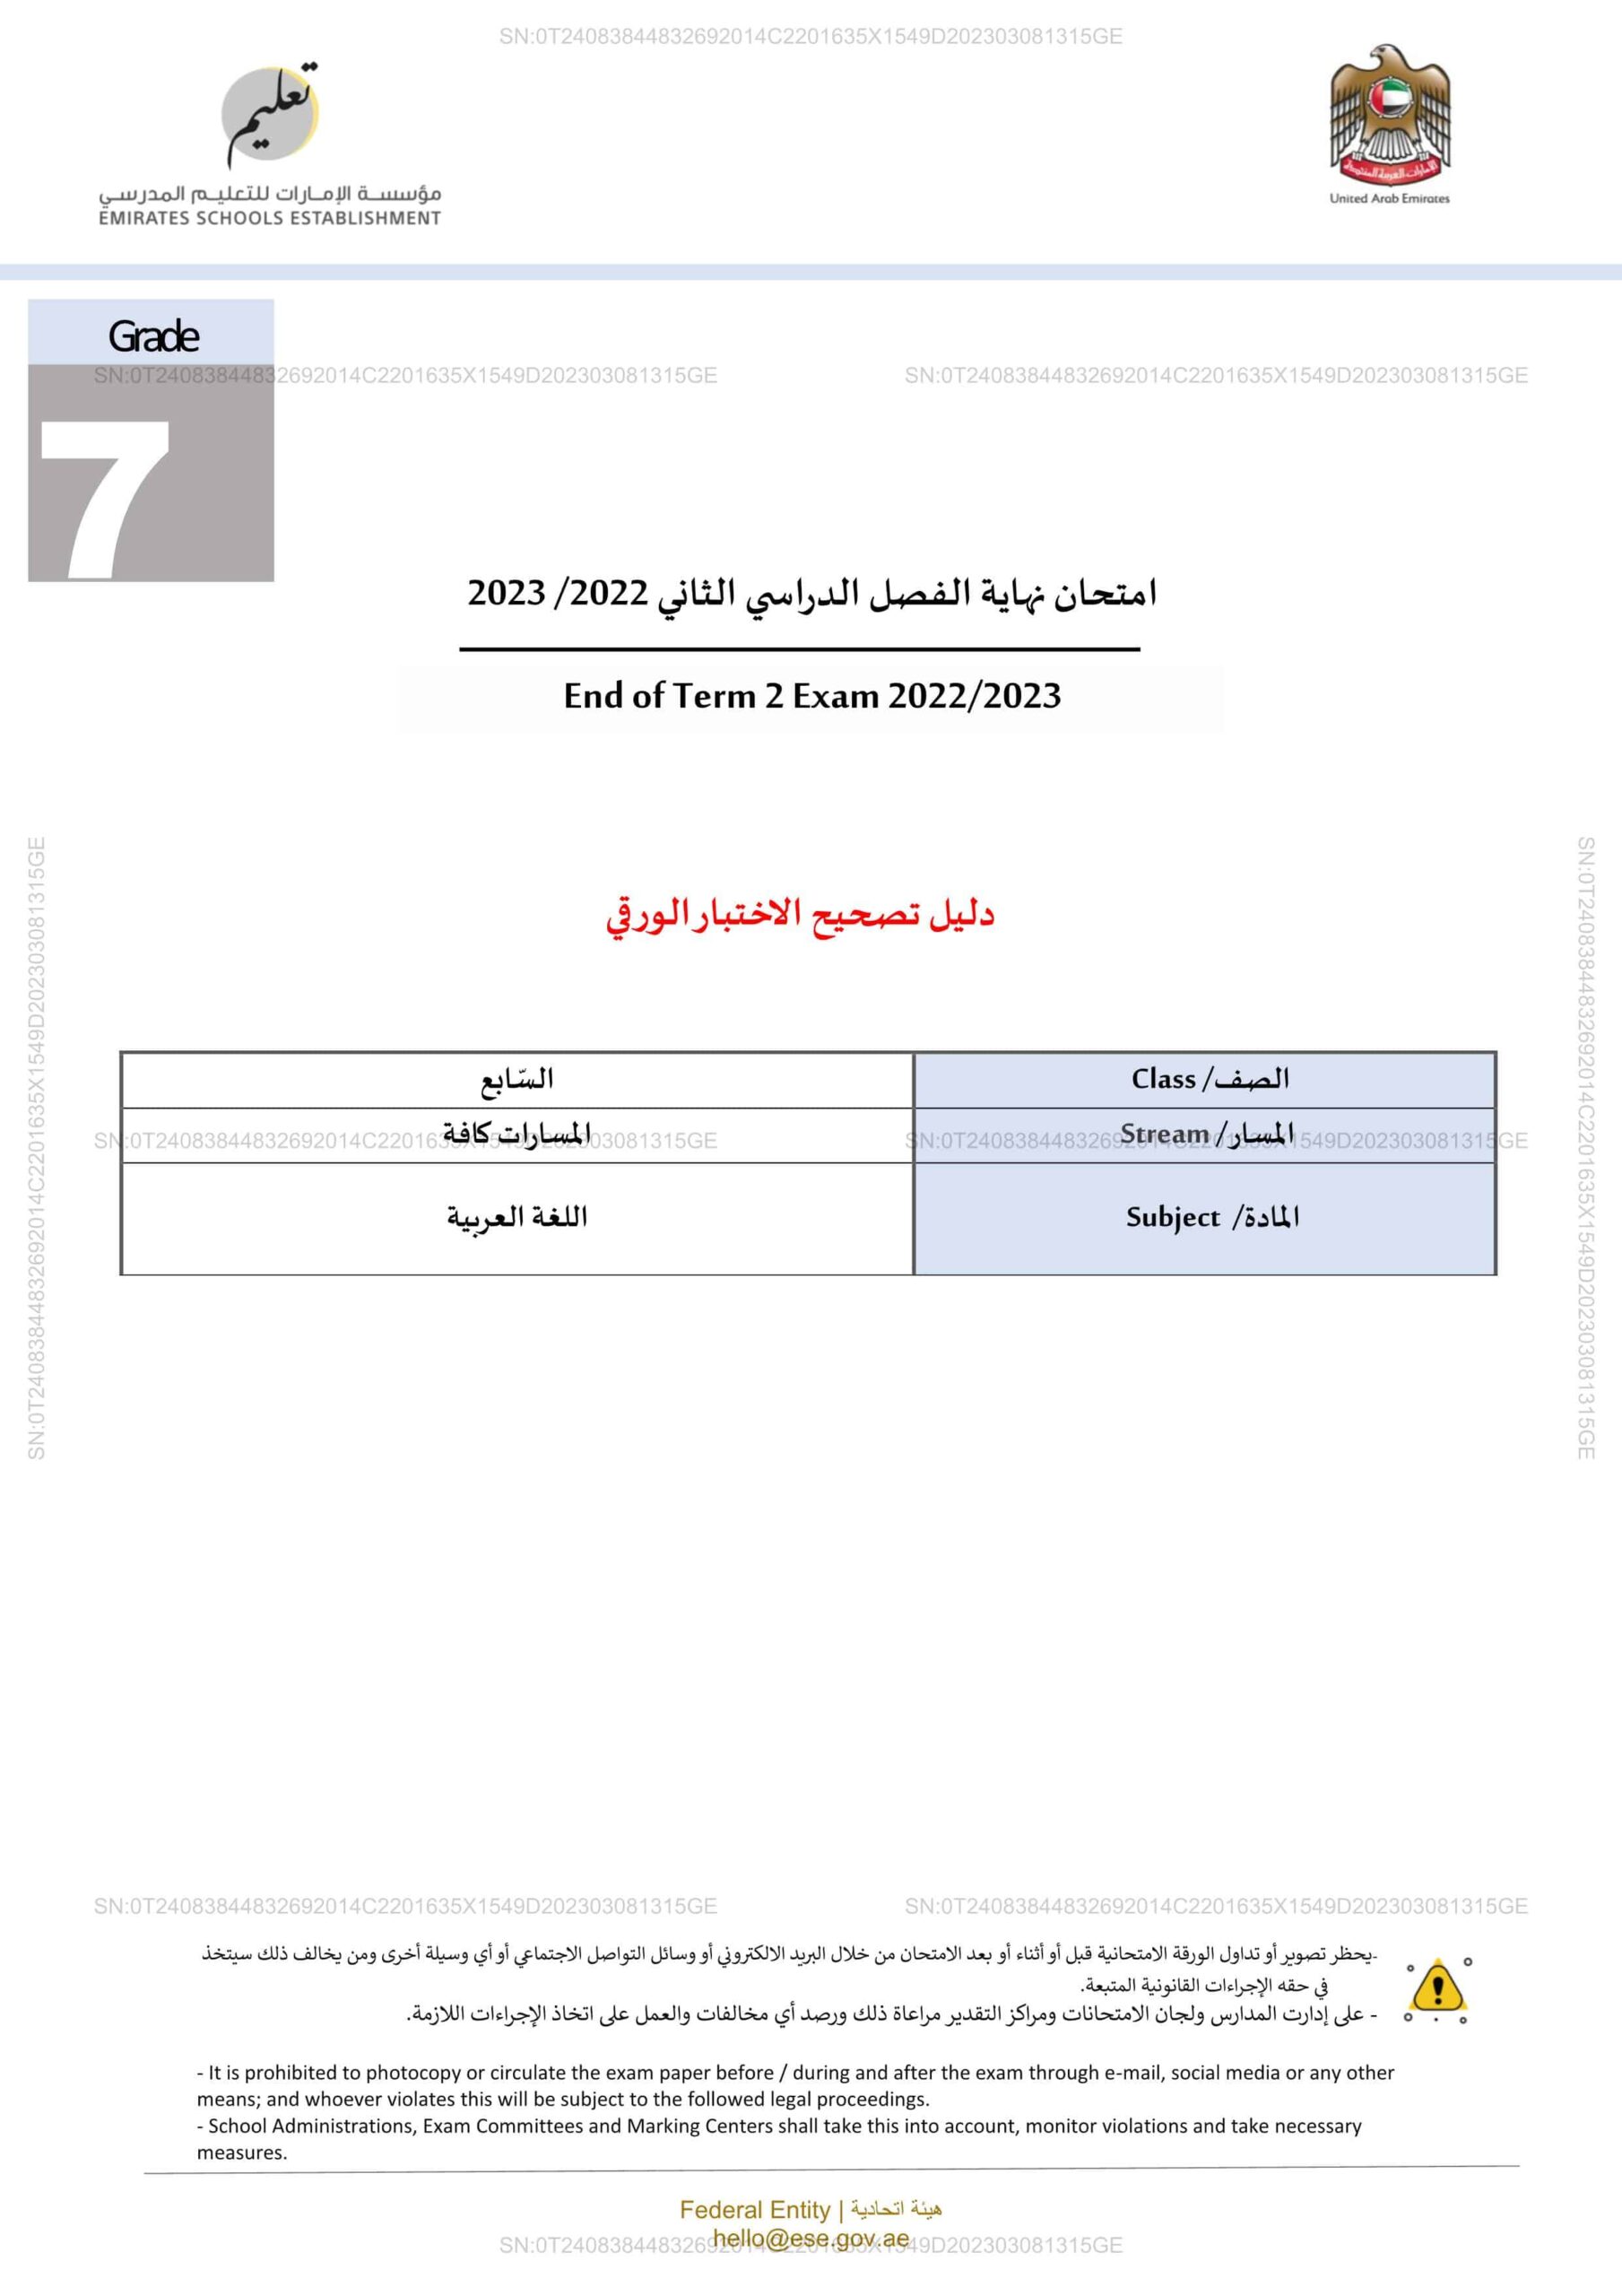 دليل تصحيح الاختبار الورقي اللغة العربية الصف السابع الفصل الدراسي الثاني 2022-2023